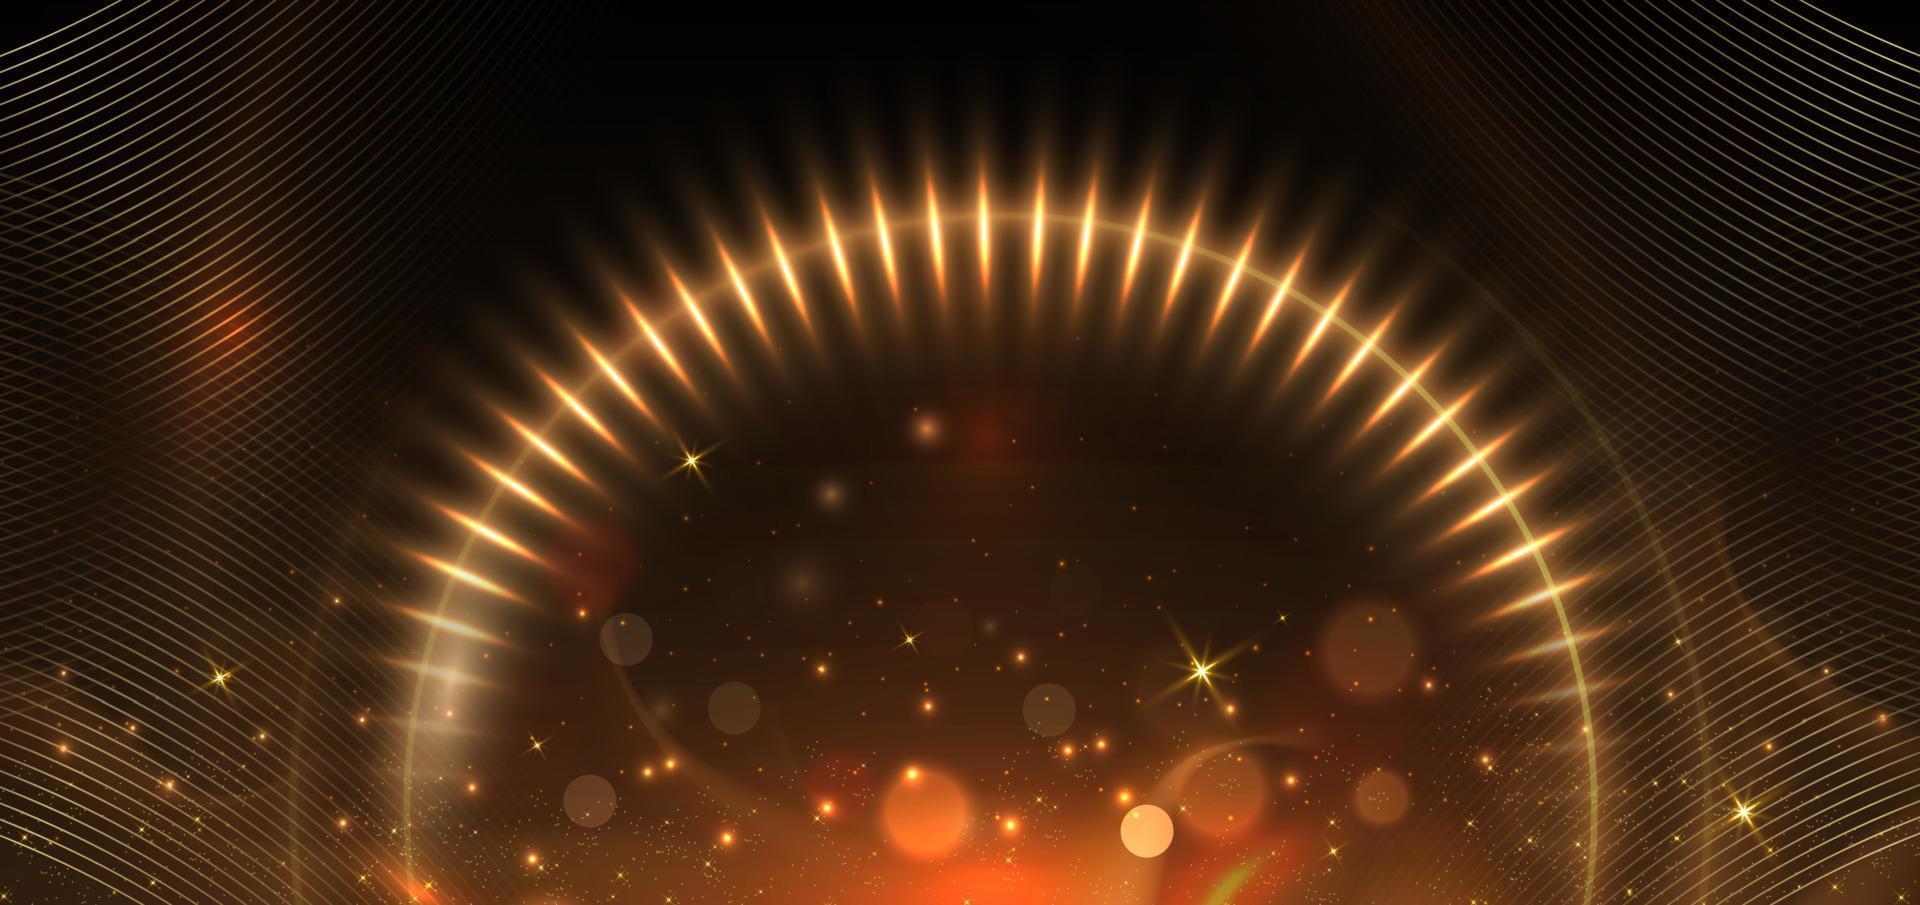 cercles abstraits d'effet de lumière dorée brillant élégant effet de lumière dorée bokeh sur fond marron foncé. vecteur